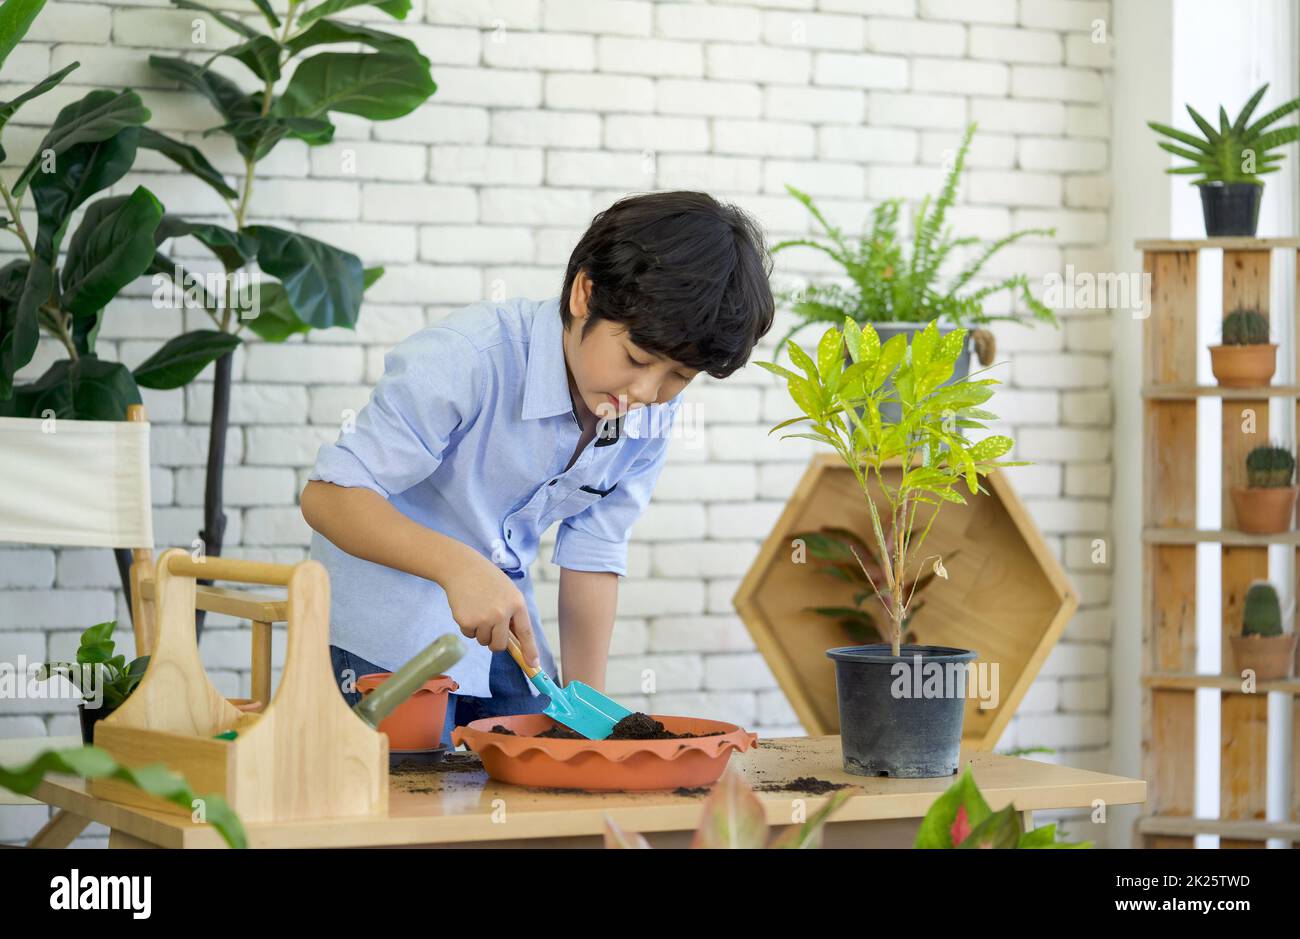 Il ragazzo asiatico trascorse le vacanze curando il giardino interno, mescolando il suolo e fertilizzante con la pala da giardinaggio blu. Foto Stock